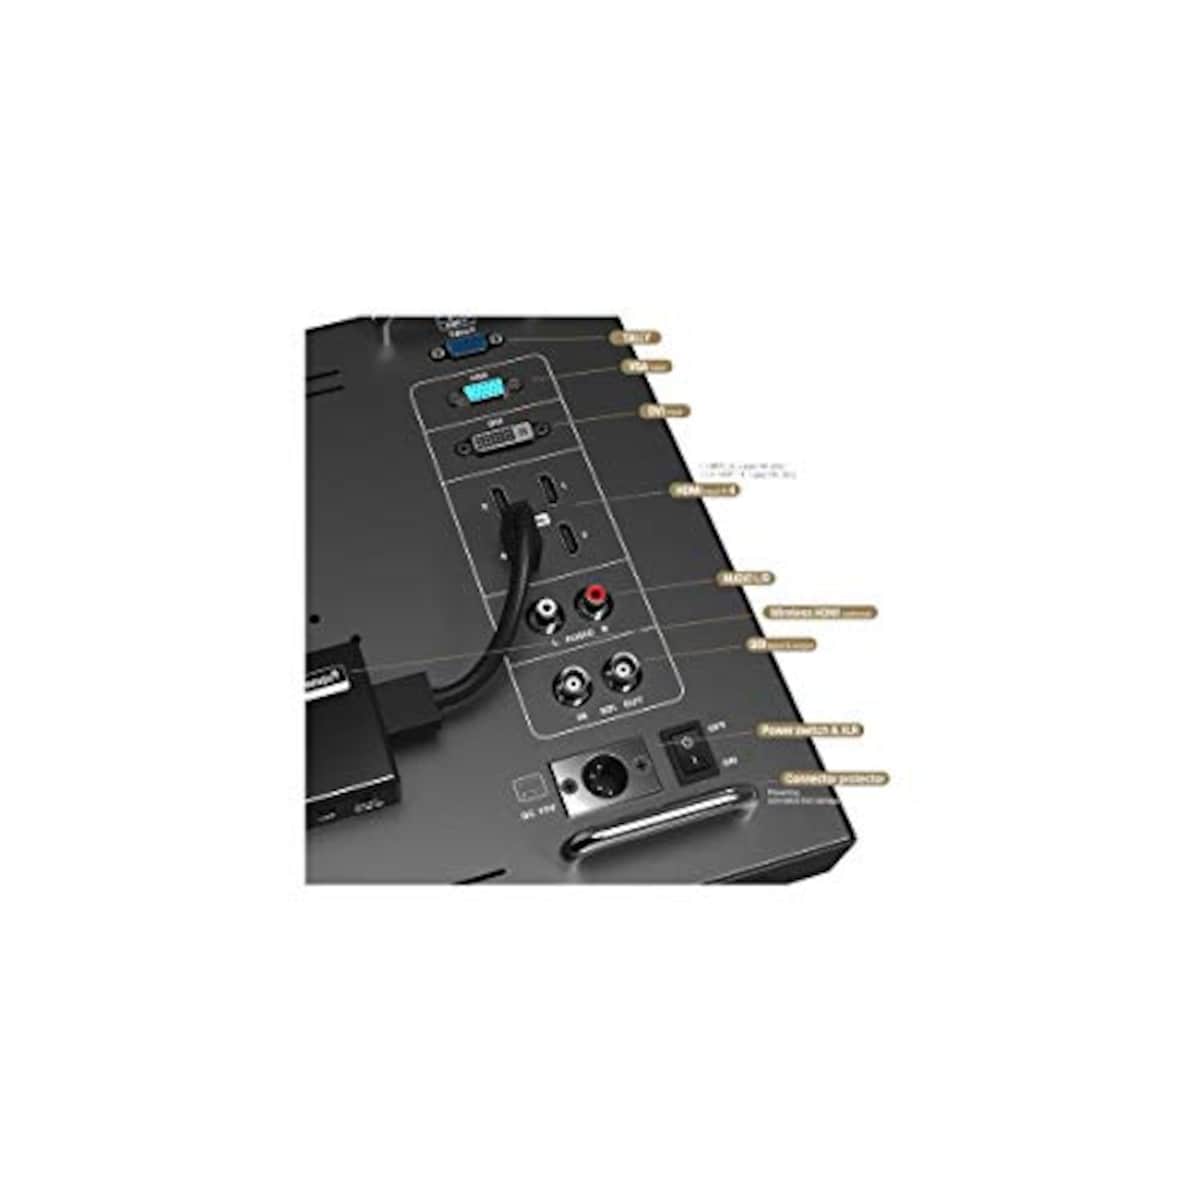  LILLIPUT リリプット 15.6インチ 3G-SDI 4kディレクターモニター 金属ハウジング 黒 BM150-4K画像2 